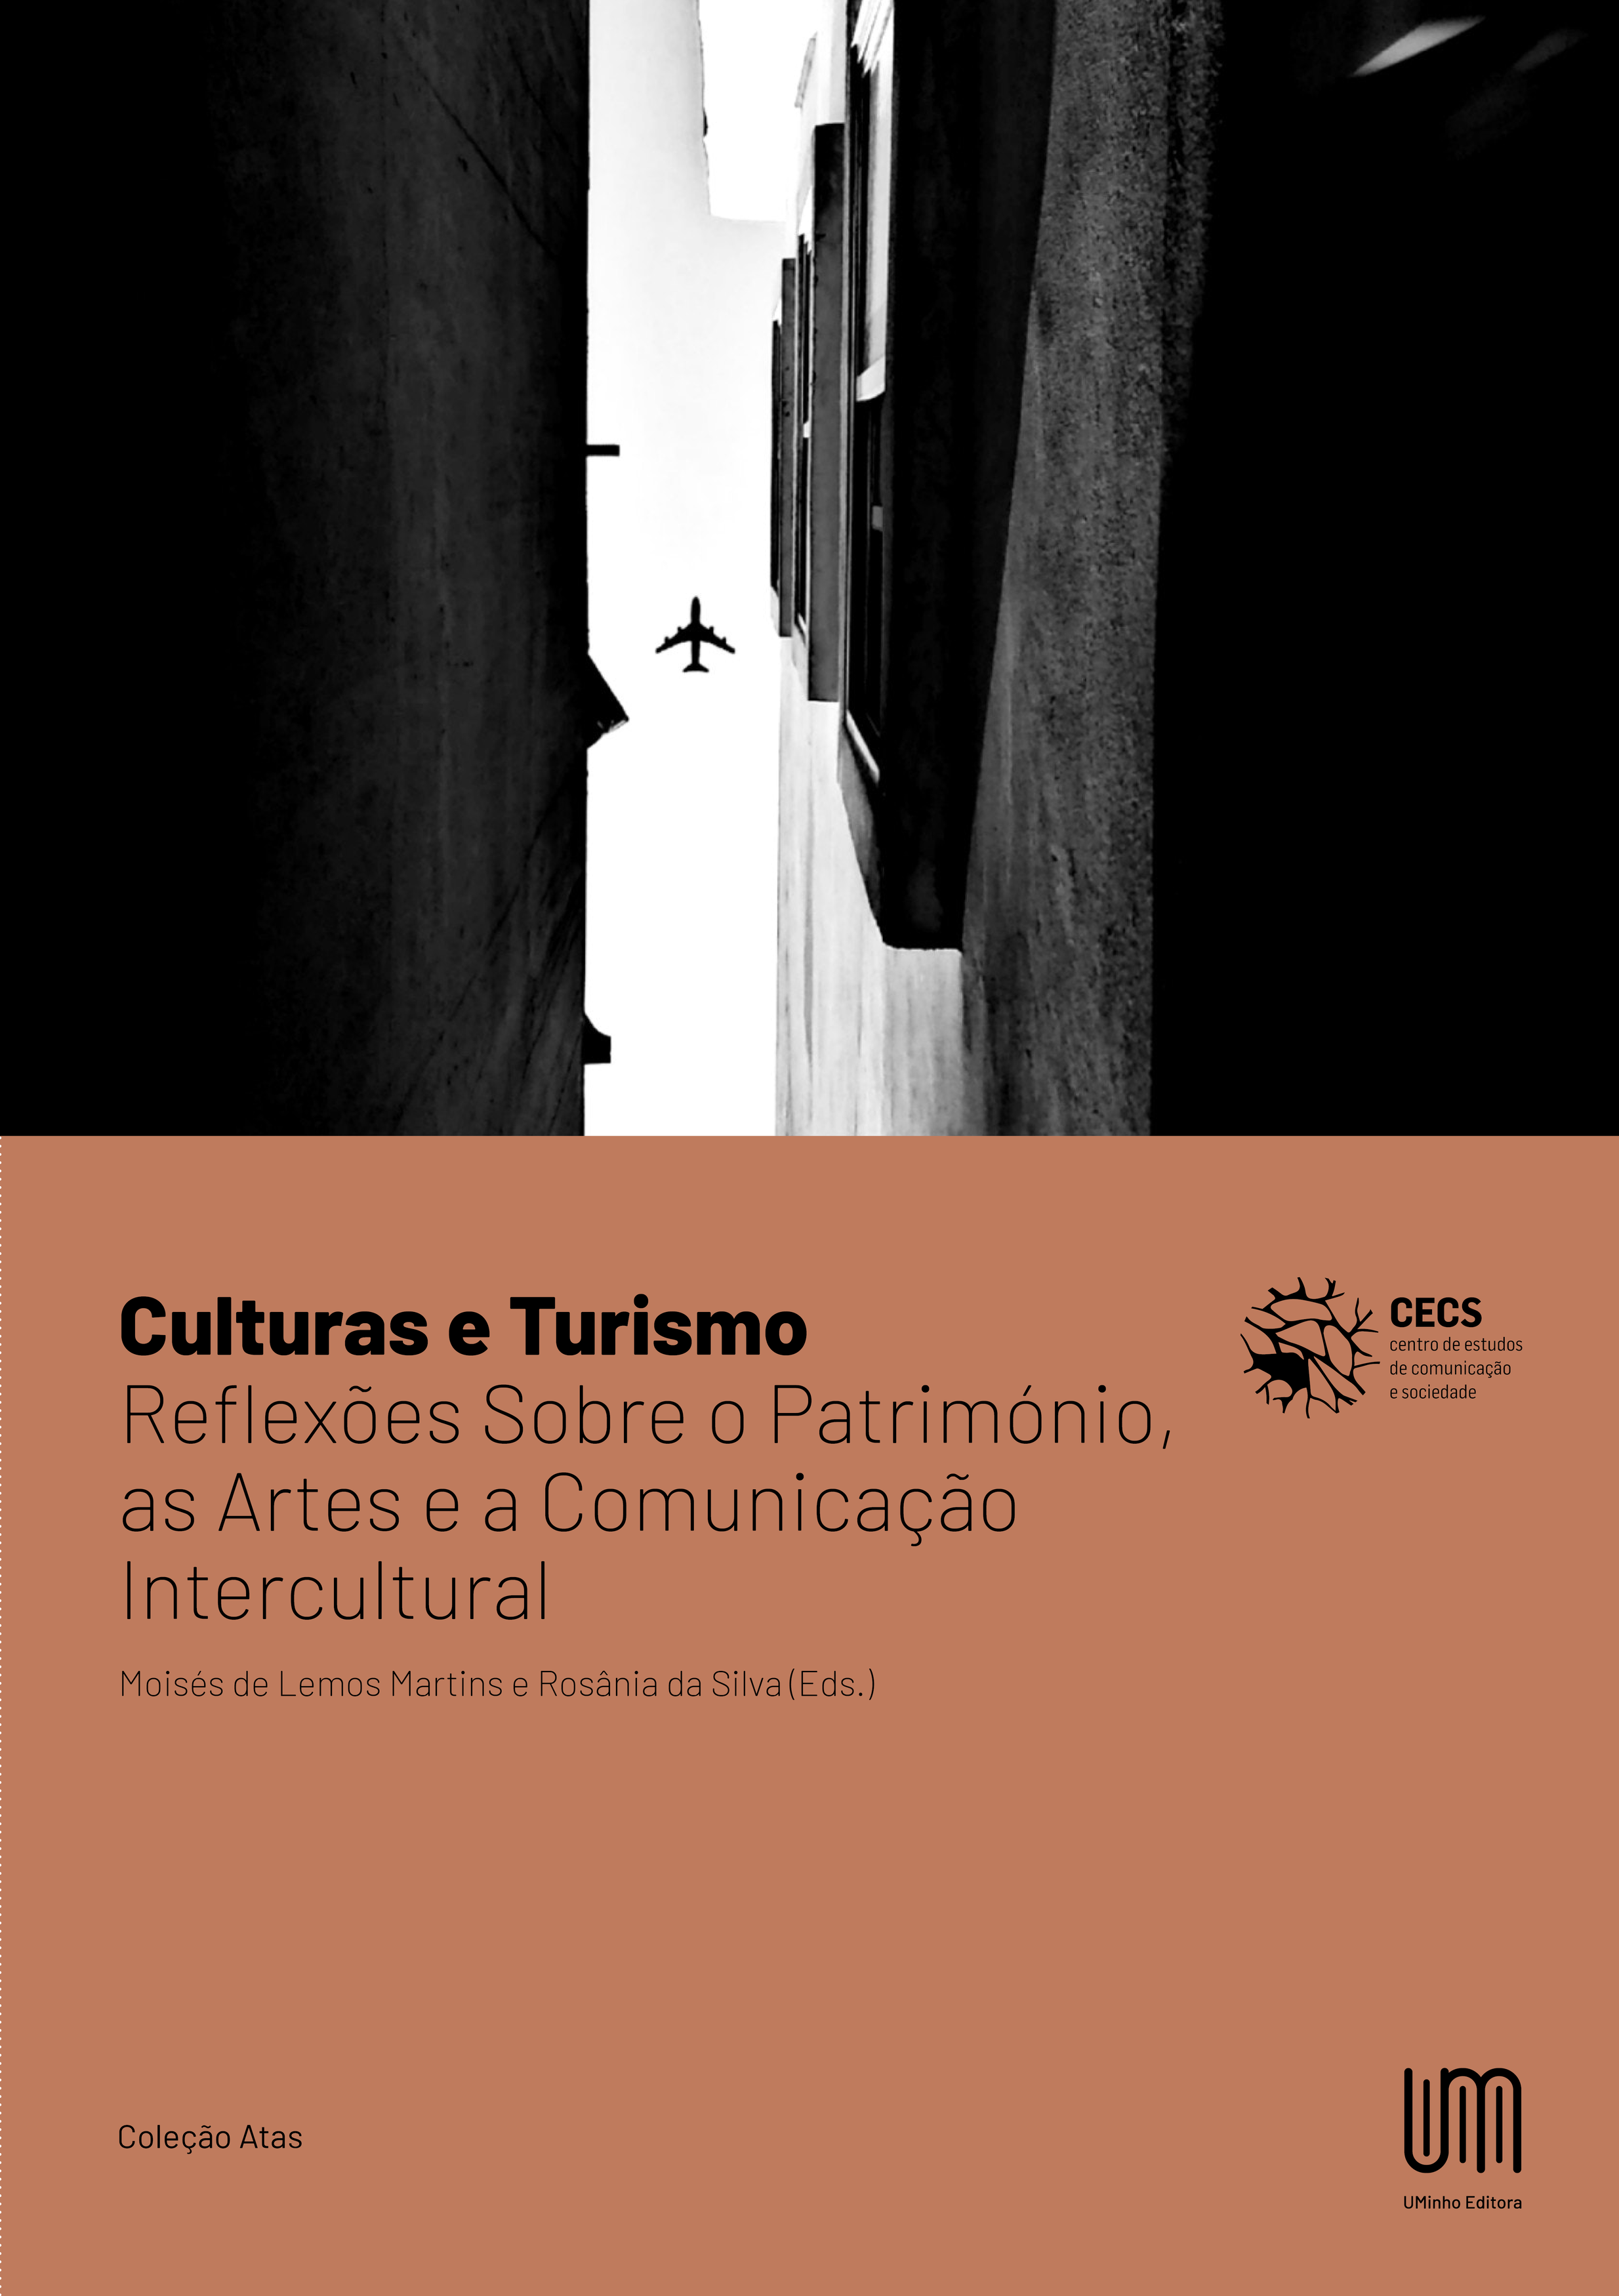 Imagen de portada del libro Culturas e Turismo: Reflexões Sobre o Património, as Artes e a Comunicação Intercultural